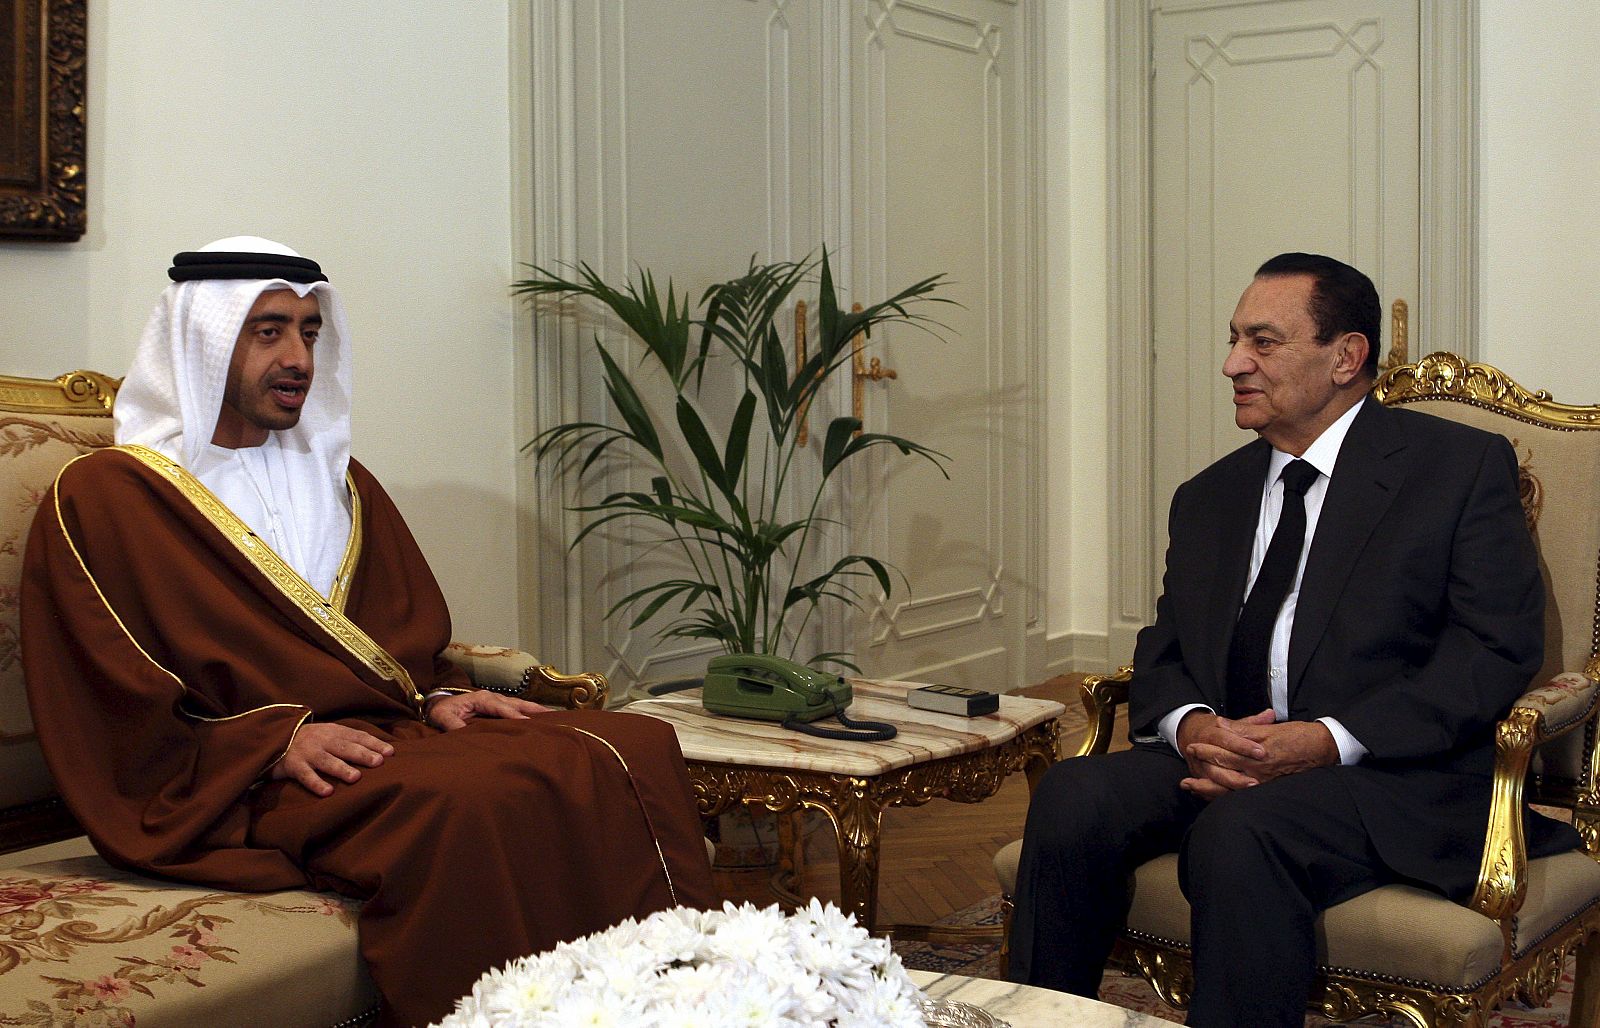 El presidente de Egipto, Hosni Mubarak conversa con el ministro de Exteriores de los Emiratos Árabes Unidos (EAU), el jeque Abdullah bin Zayed Al Nahayan, durante una reunión en el palacio Itahediyah en El Cairo, Egipto.